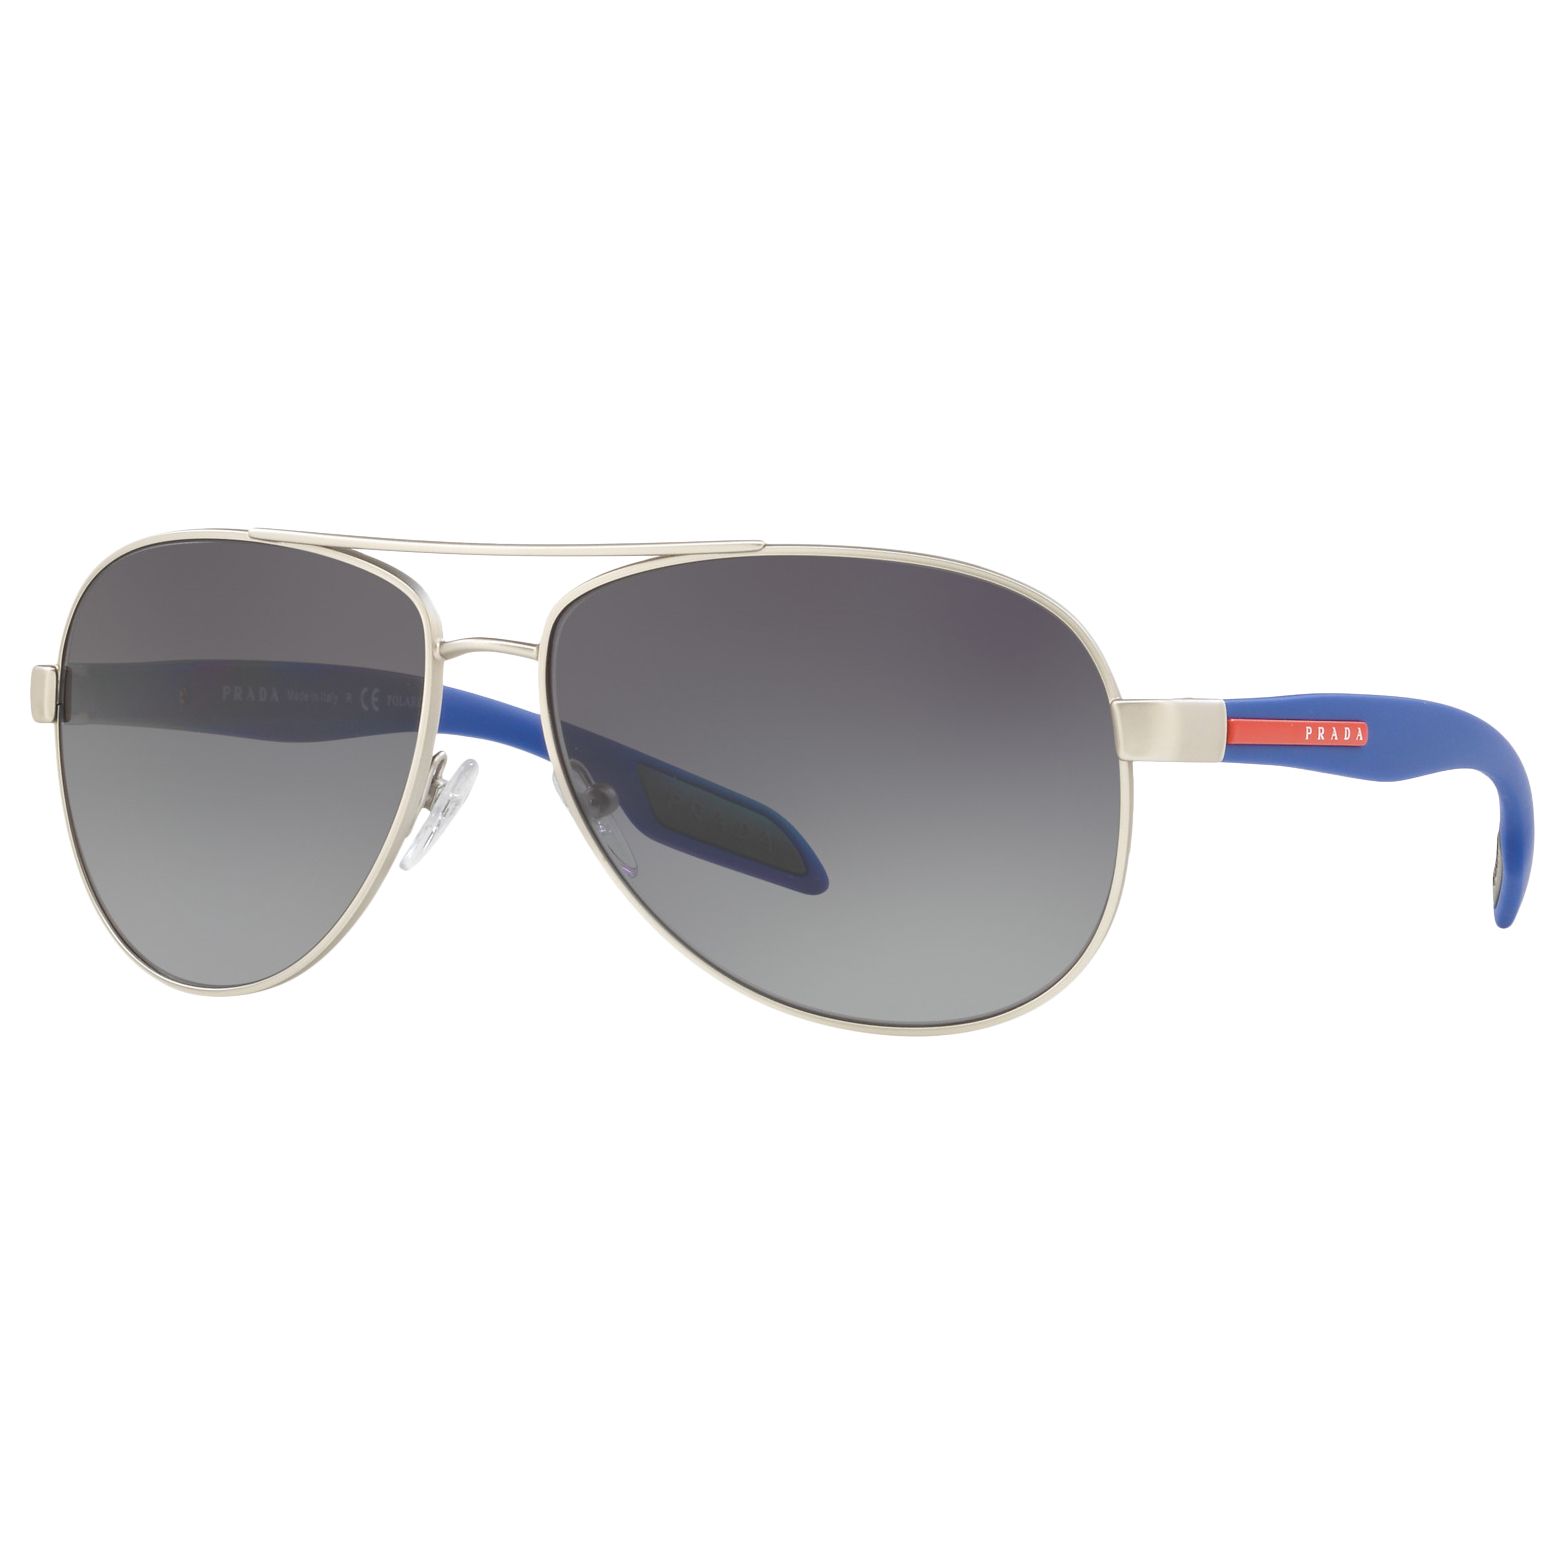 Men's Prada Sunglasses | John Lewis & Partners